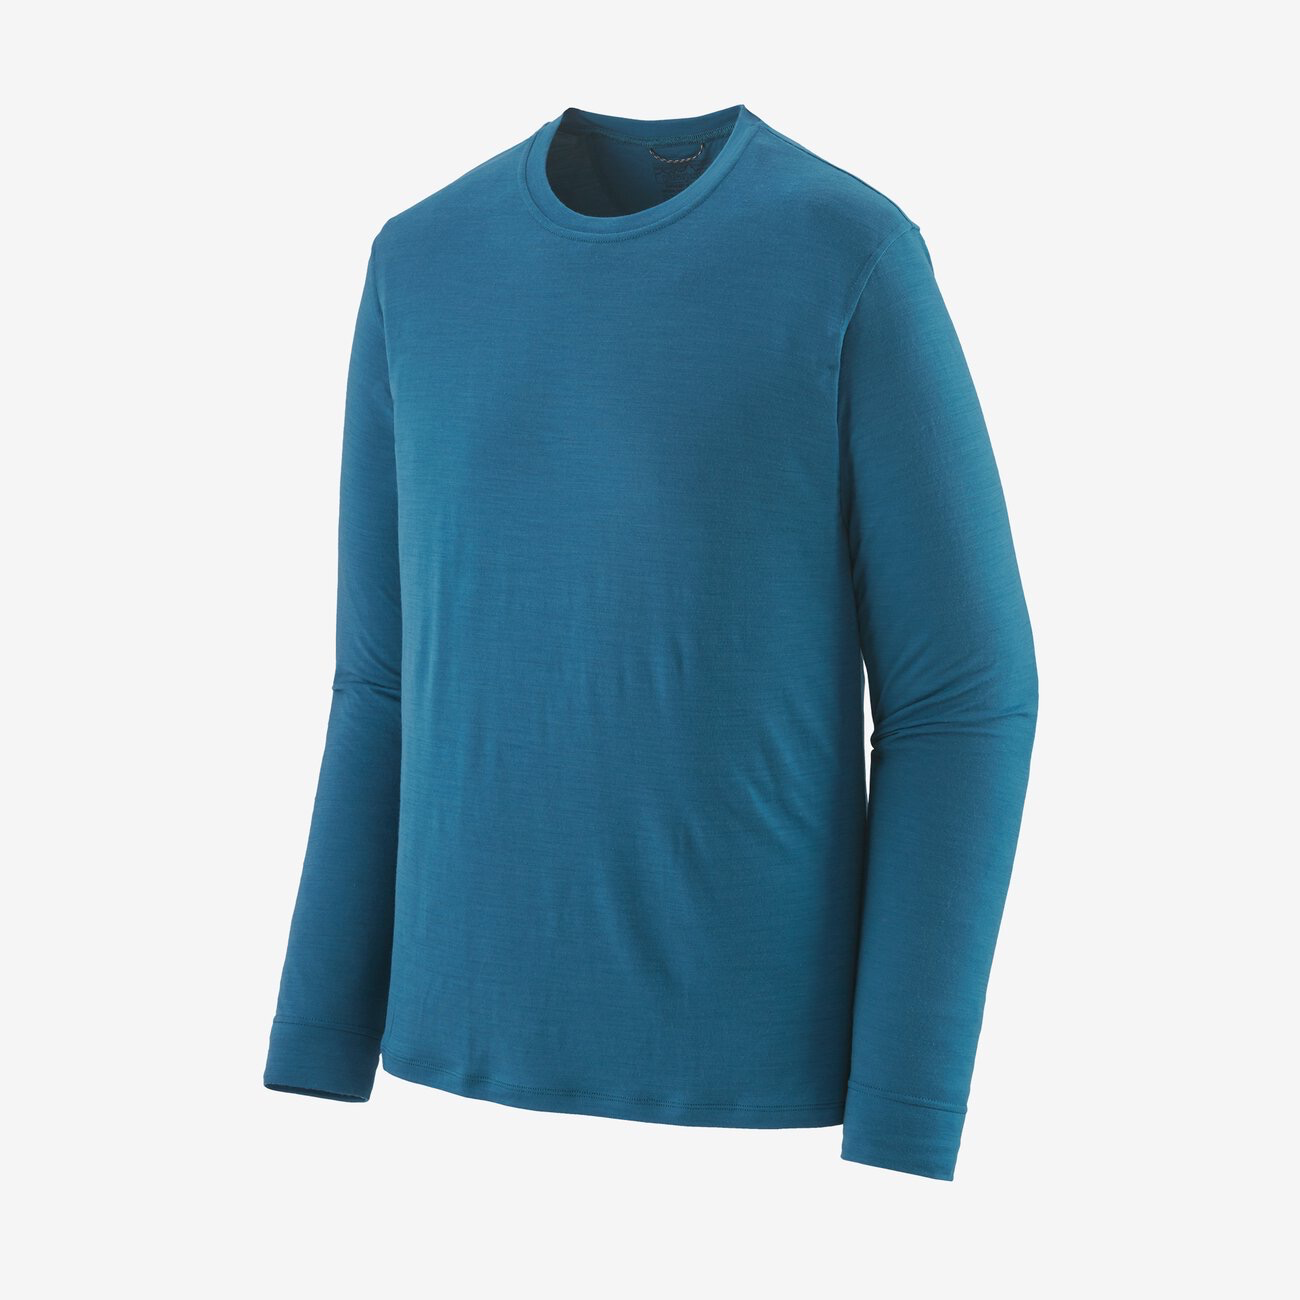 Patagonia Men's Long-Sleeved Capilene Cool Merino Shirt